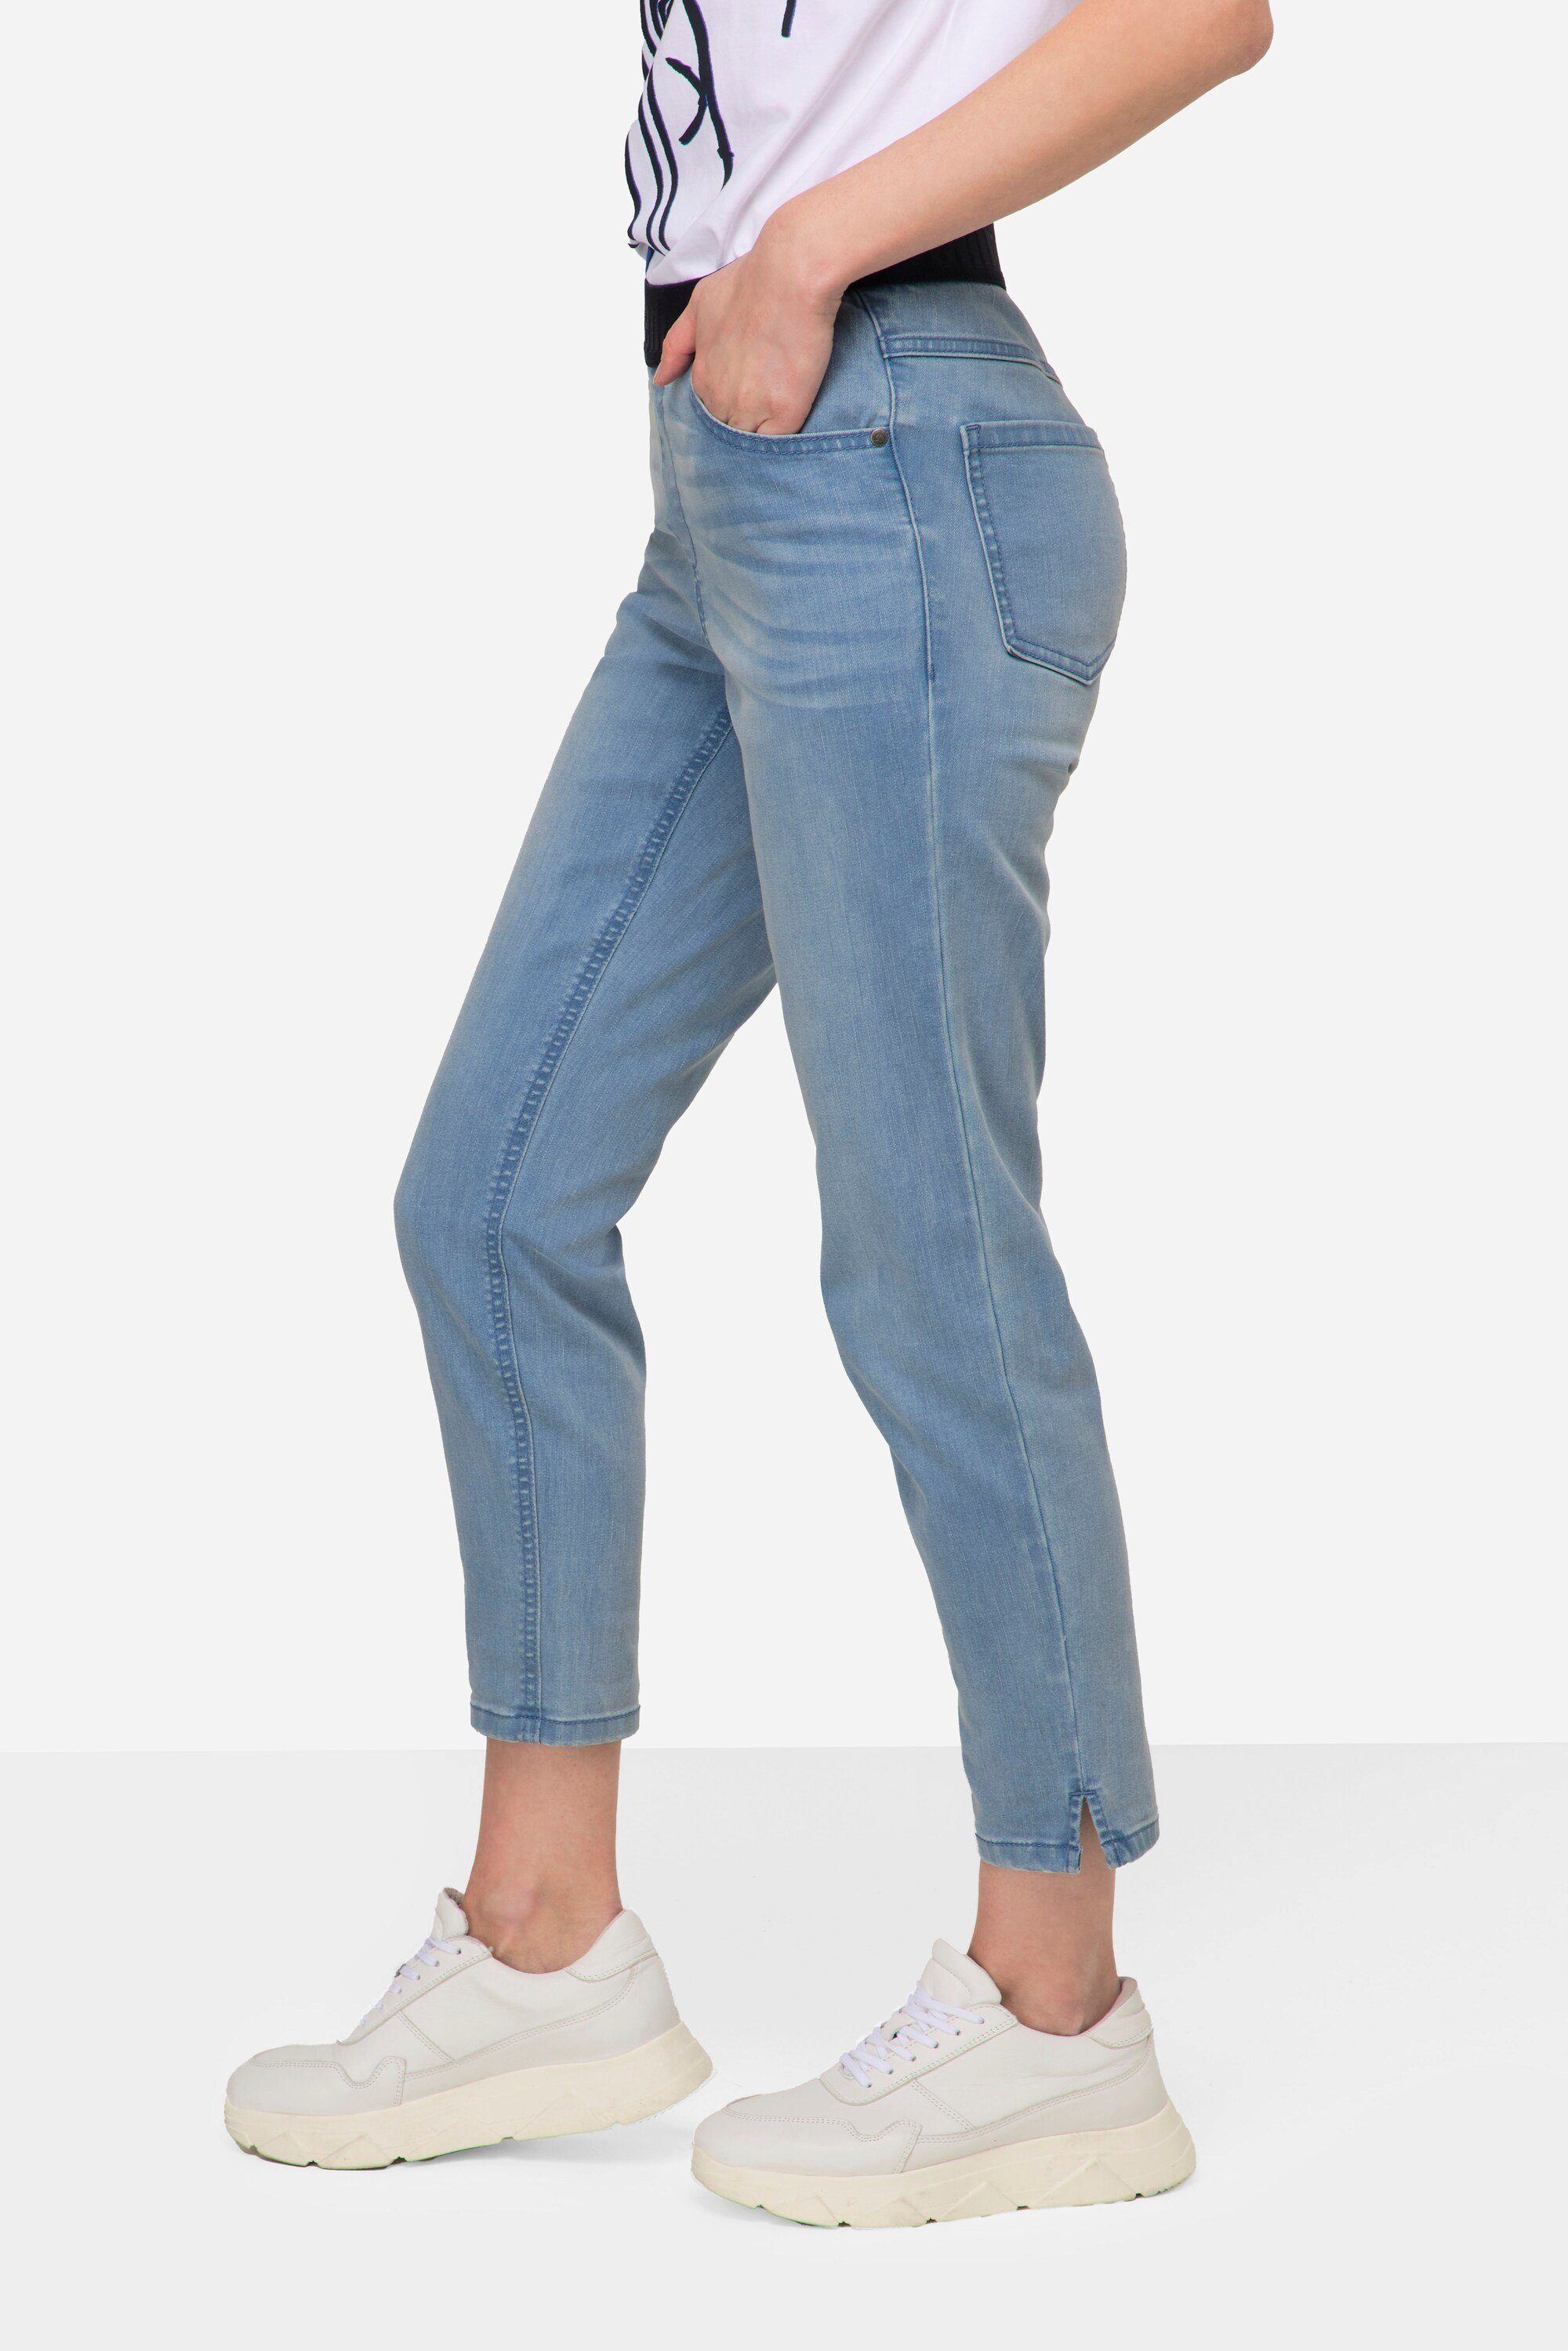 Julia bleached Laurasøn 4 Pocket Elastikbund denim Jeans Regular-fit-Jeans